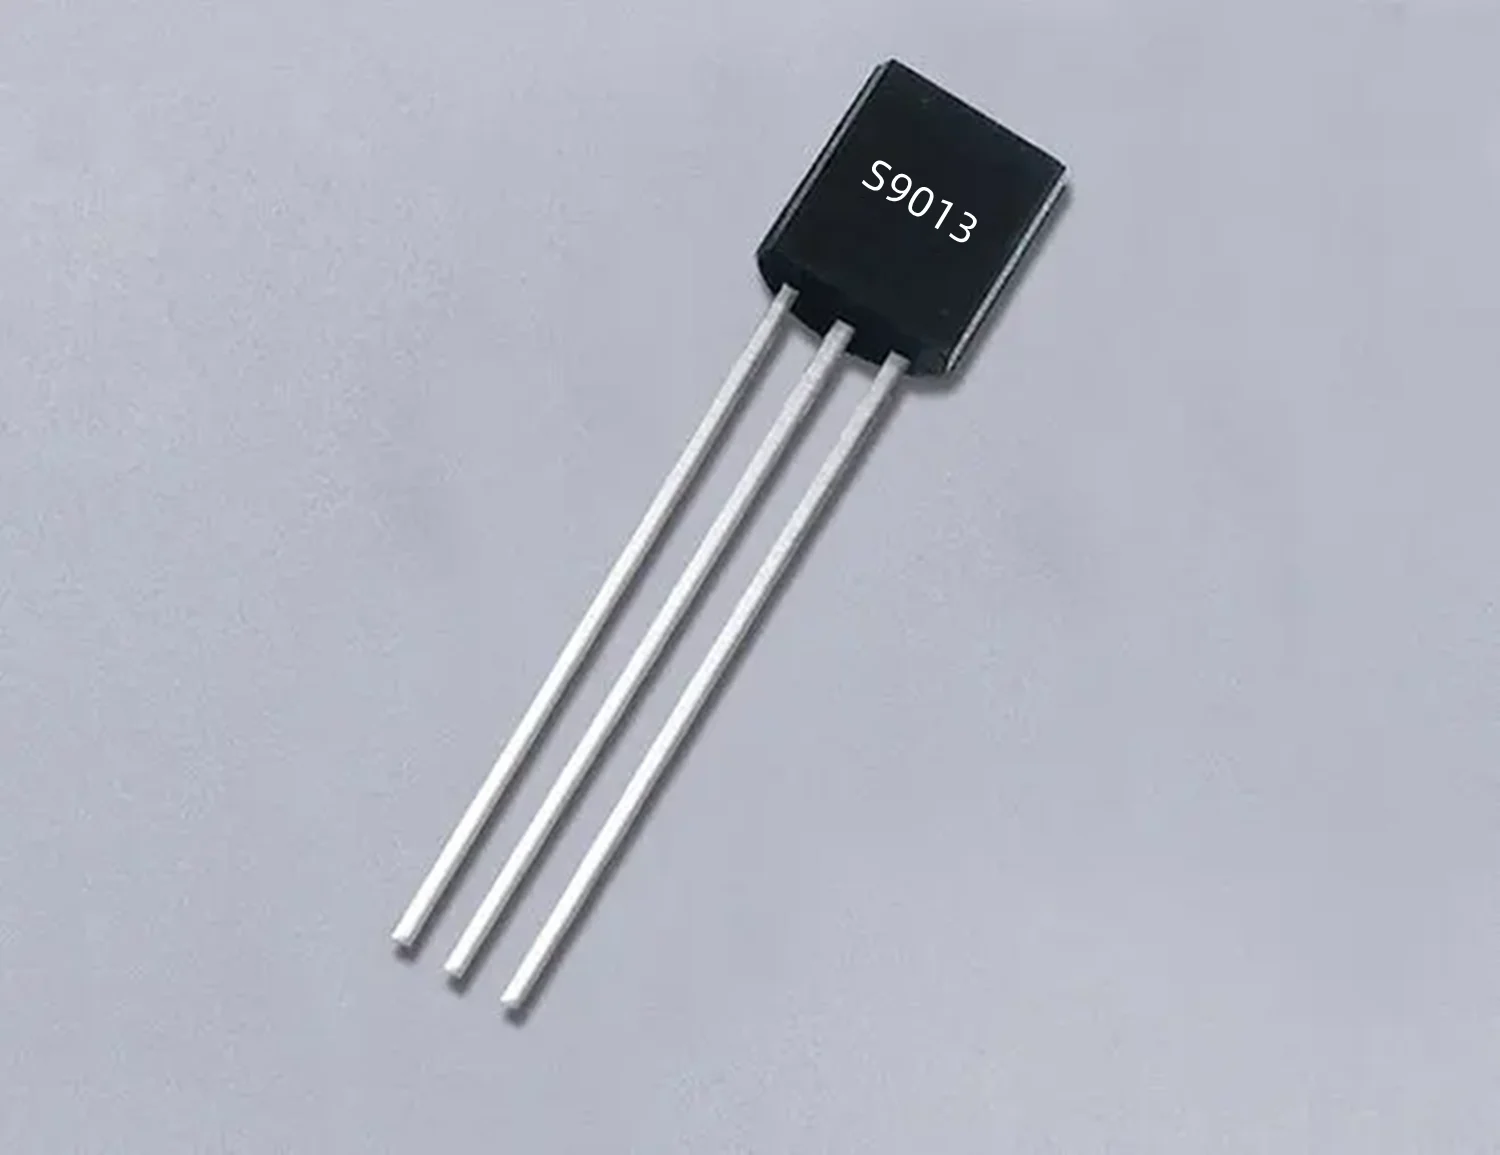 50ШТ транзисторов с прямым вводом TO92 S9013 с прямым вводом NPN типа